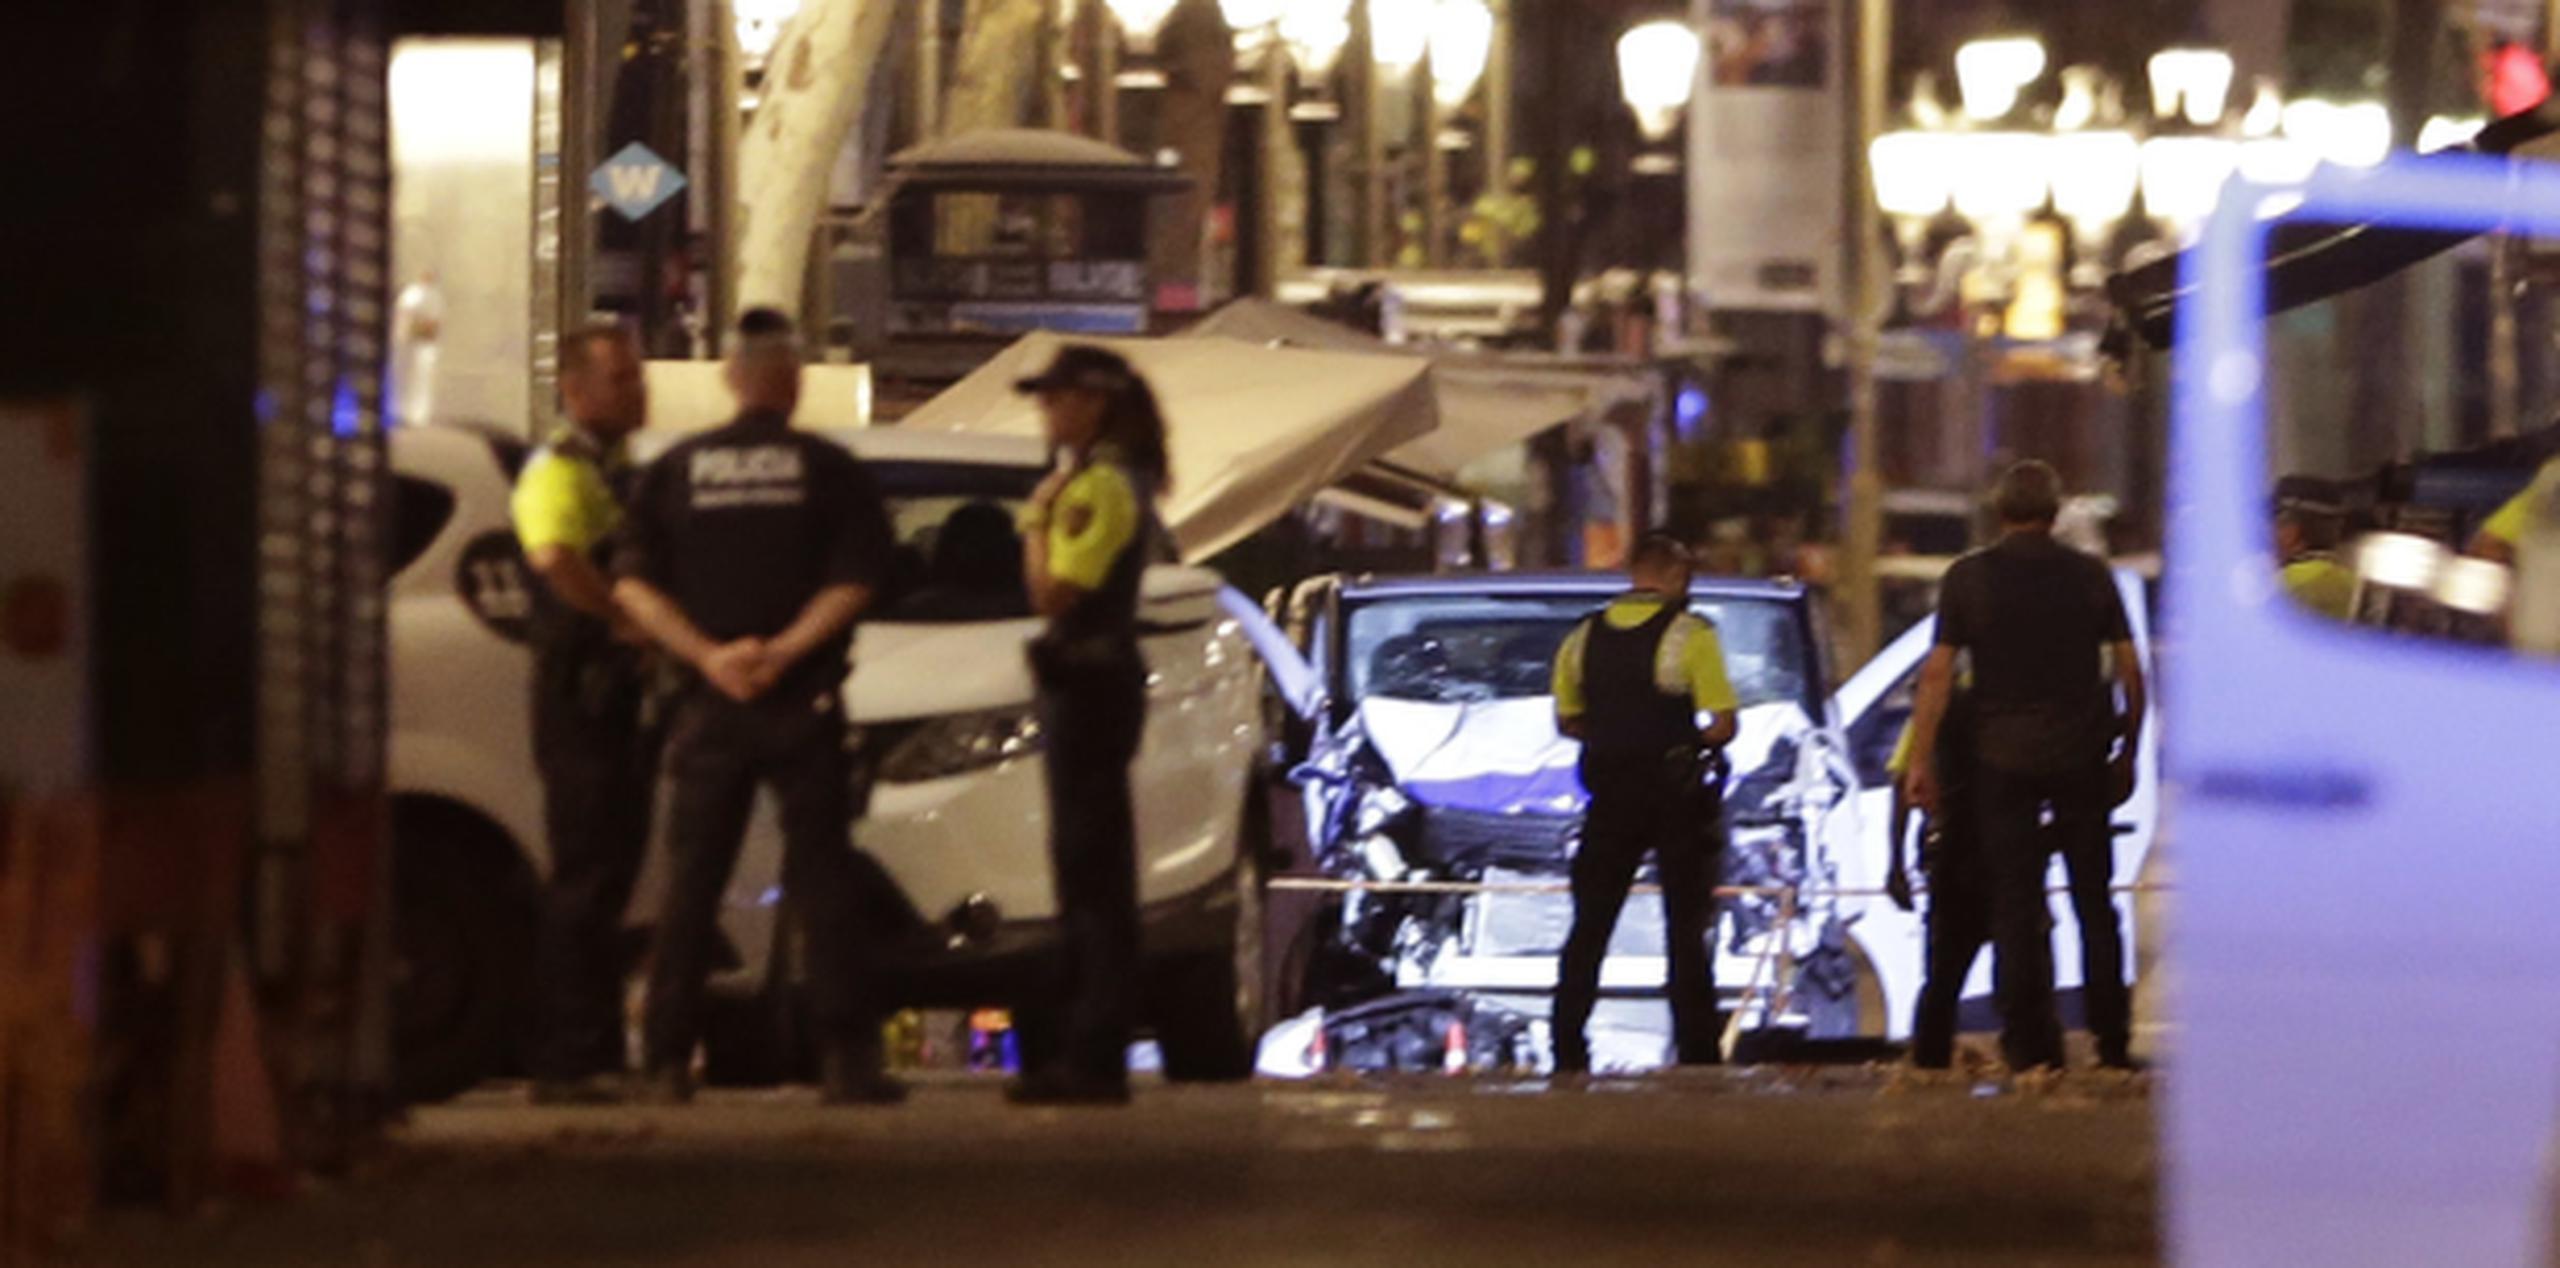 Policías resguardan la vagoneta involucrada en el ataque en Las Ramblas, Barcelona. (AP / Manu Fernández)